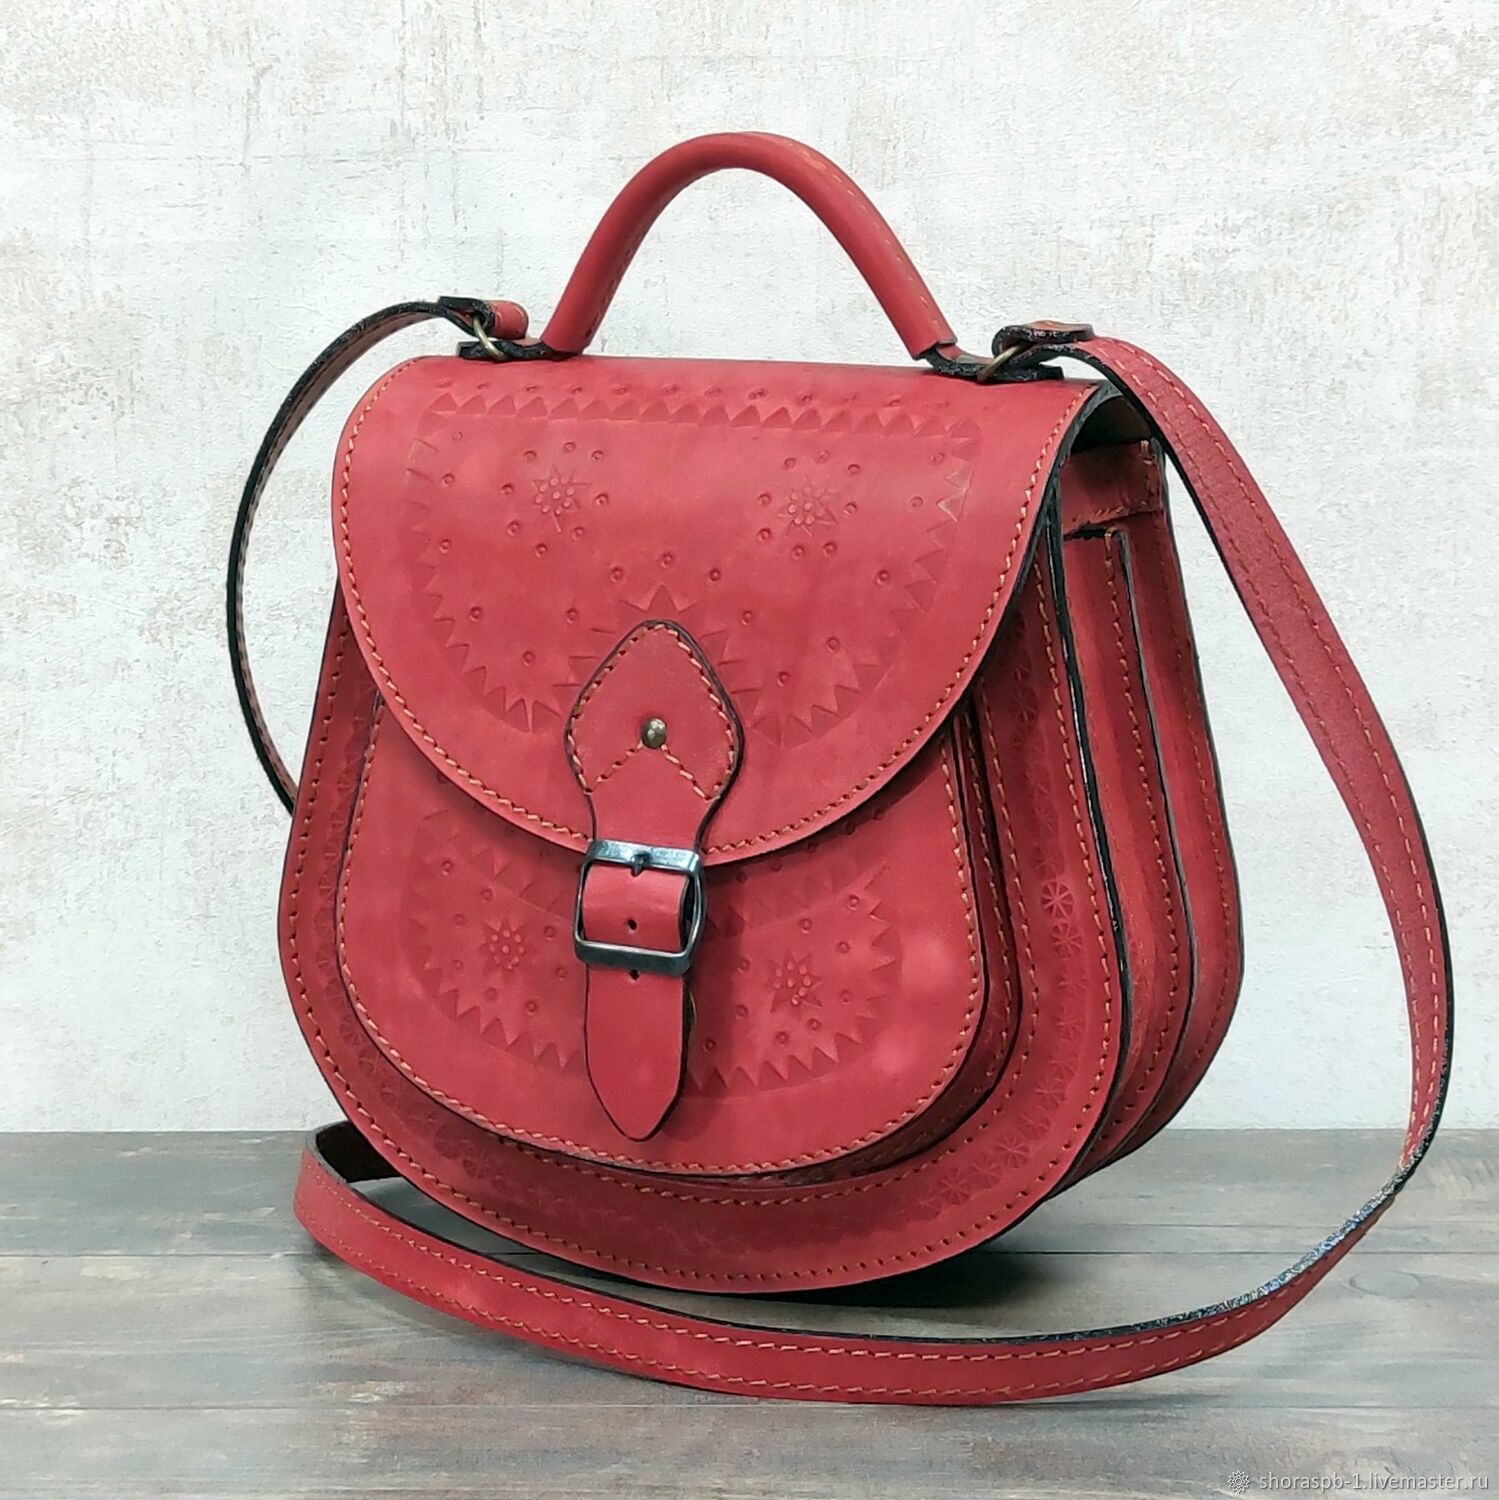 Женская сумка красная, артикул 0712к, Классическая сумка, Санкт-Петербург,  Фото №1